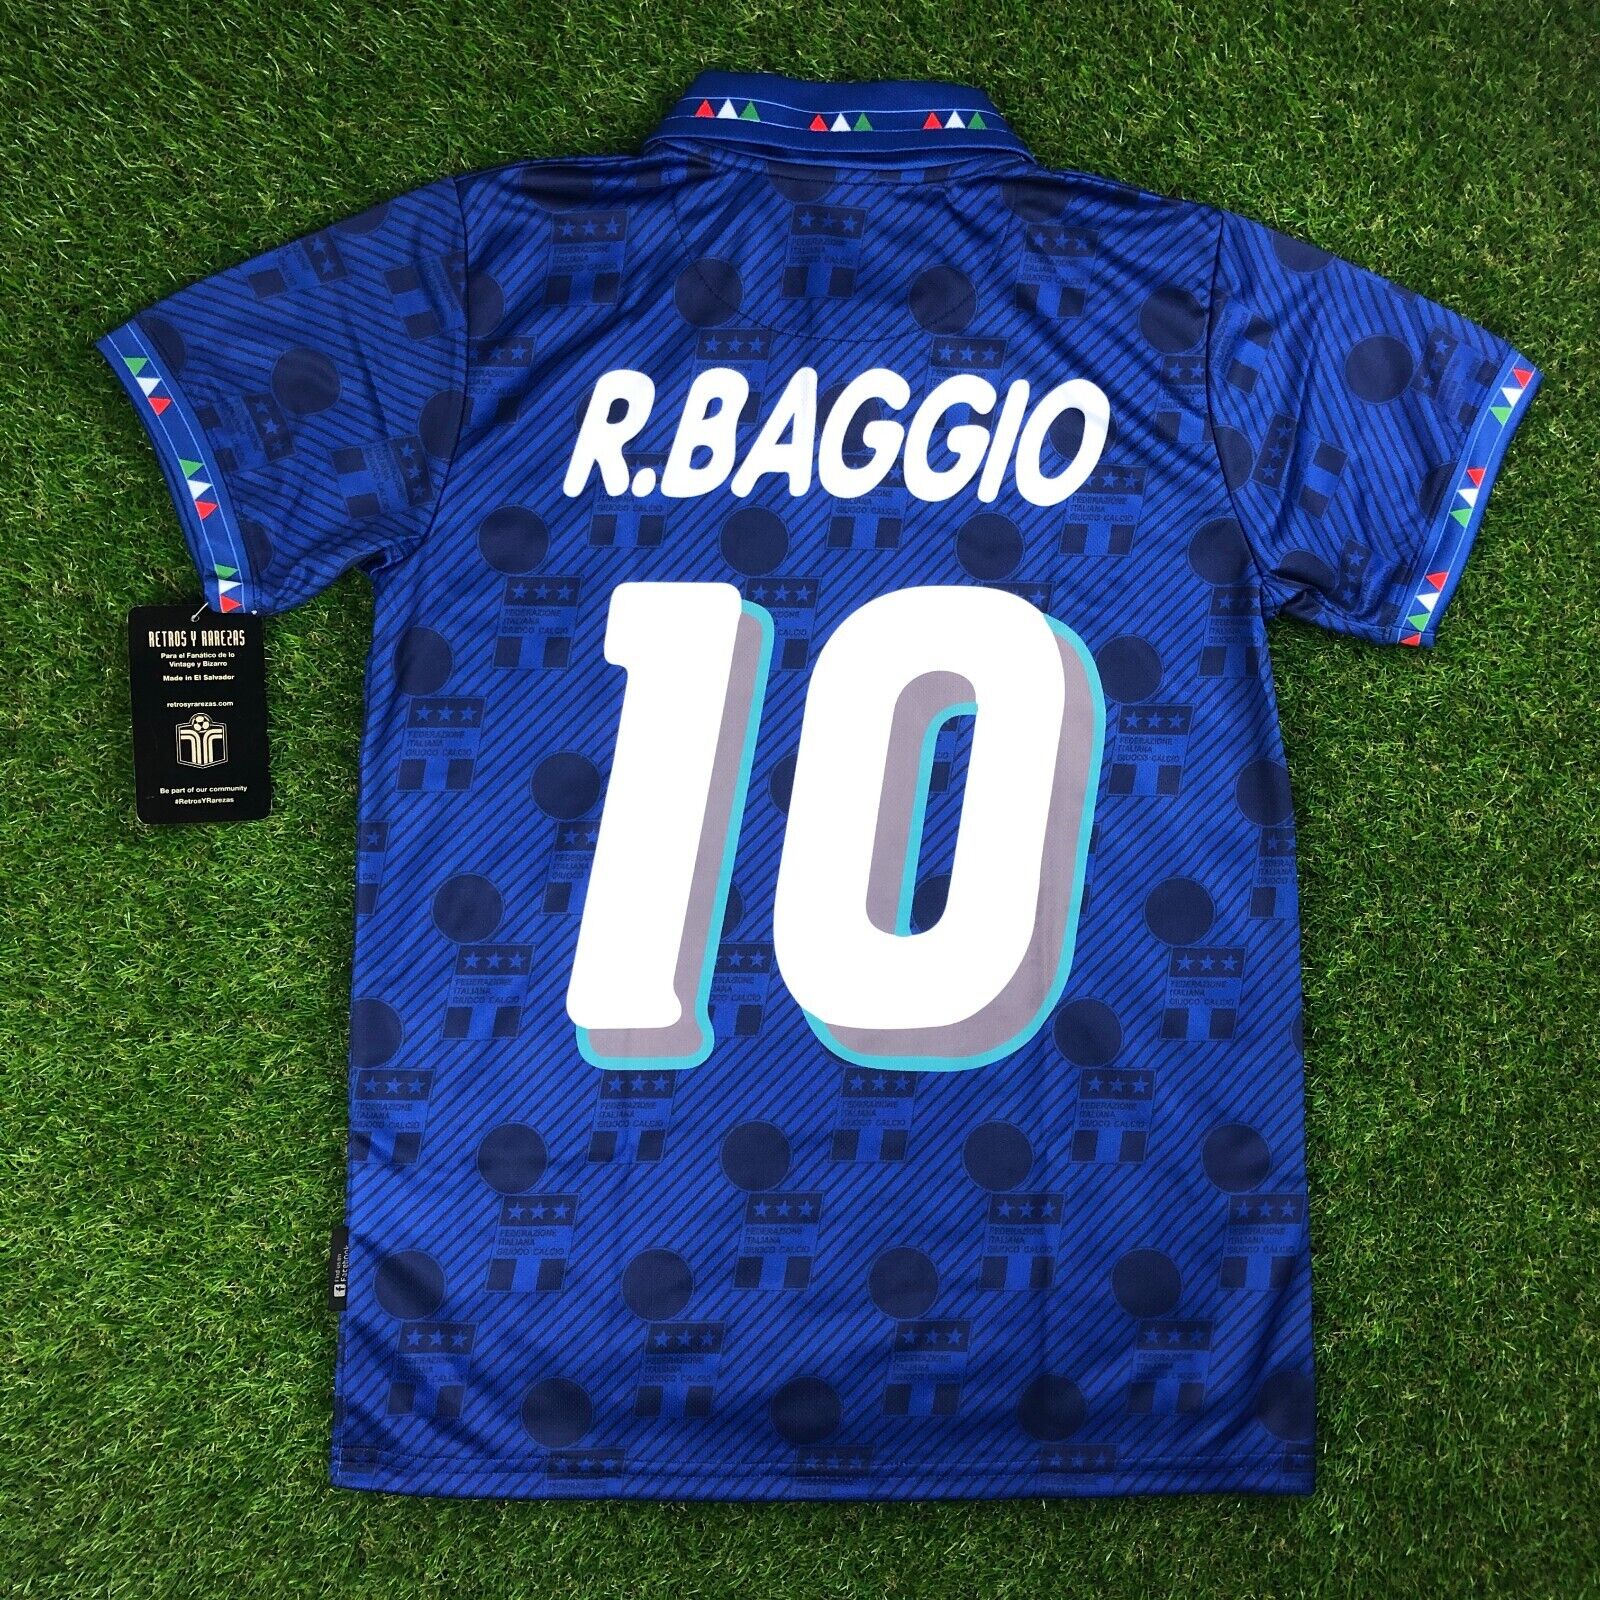 Italia / Italy Camisa Replica de Futbol Retro, 1994 Baggio (Tallaje Americano)